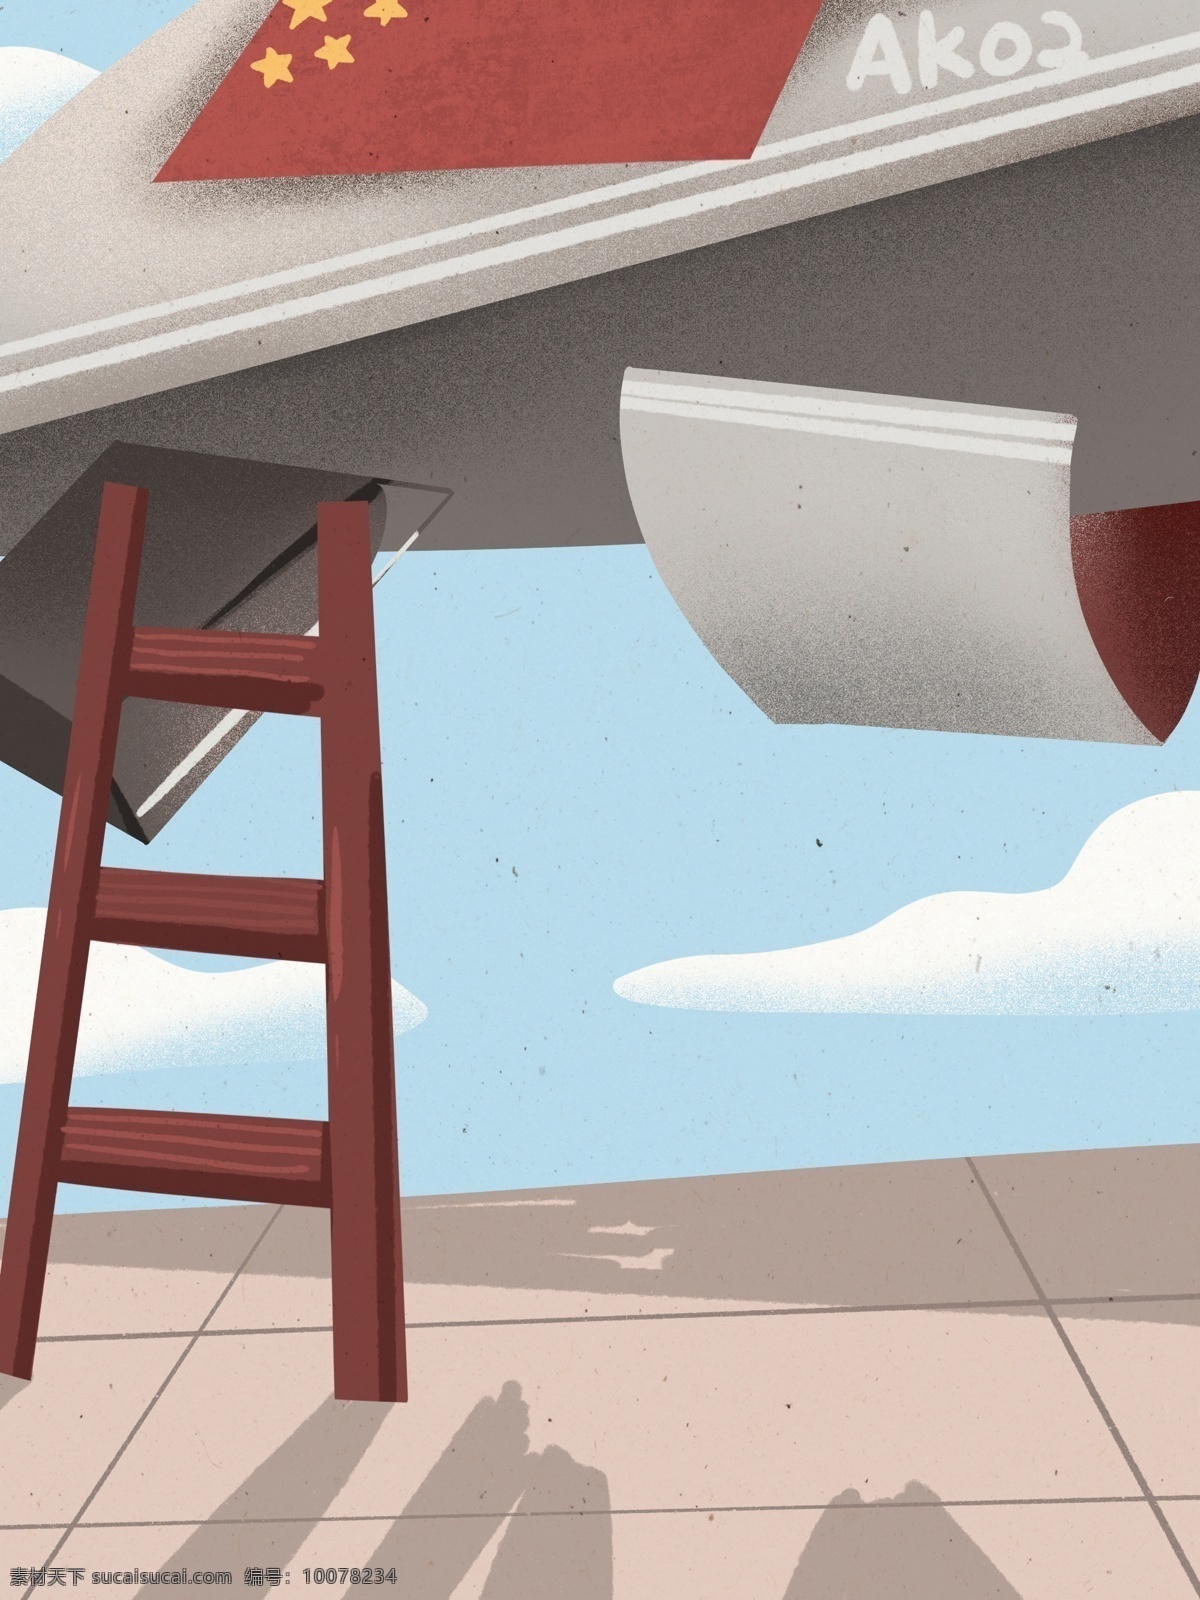 卡通 手绘 航空 飞机 插画 背景 航空飞机 插画背景 手绘背景 卡通背景 蓝天白云 通用背景 中国飞机